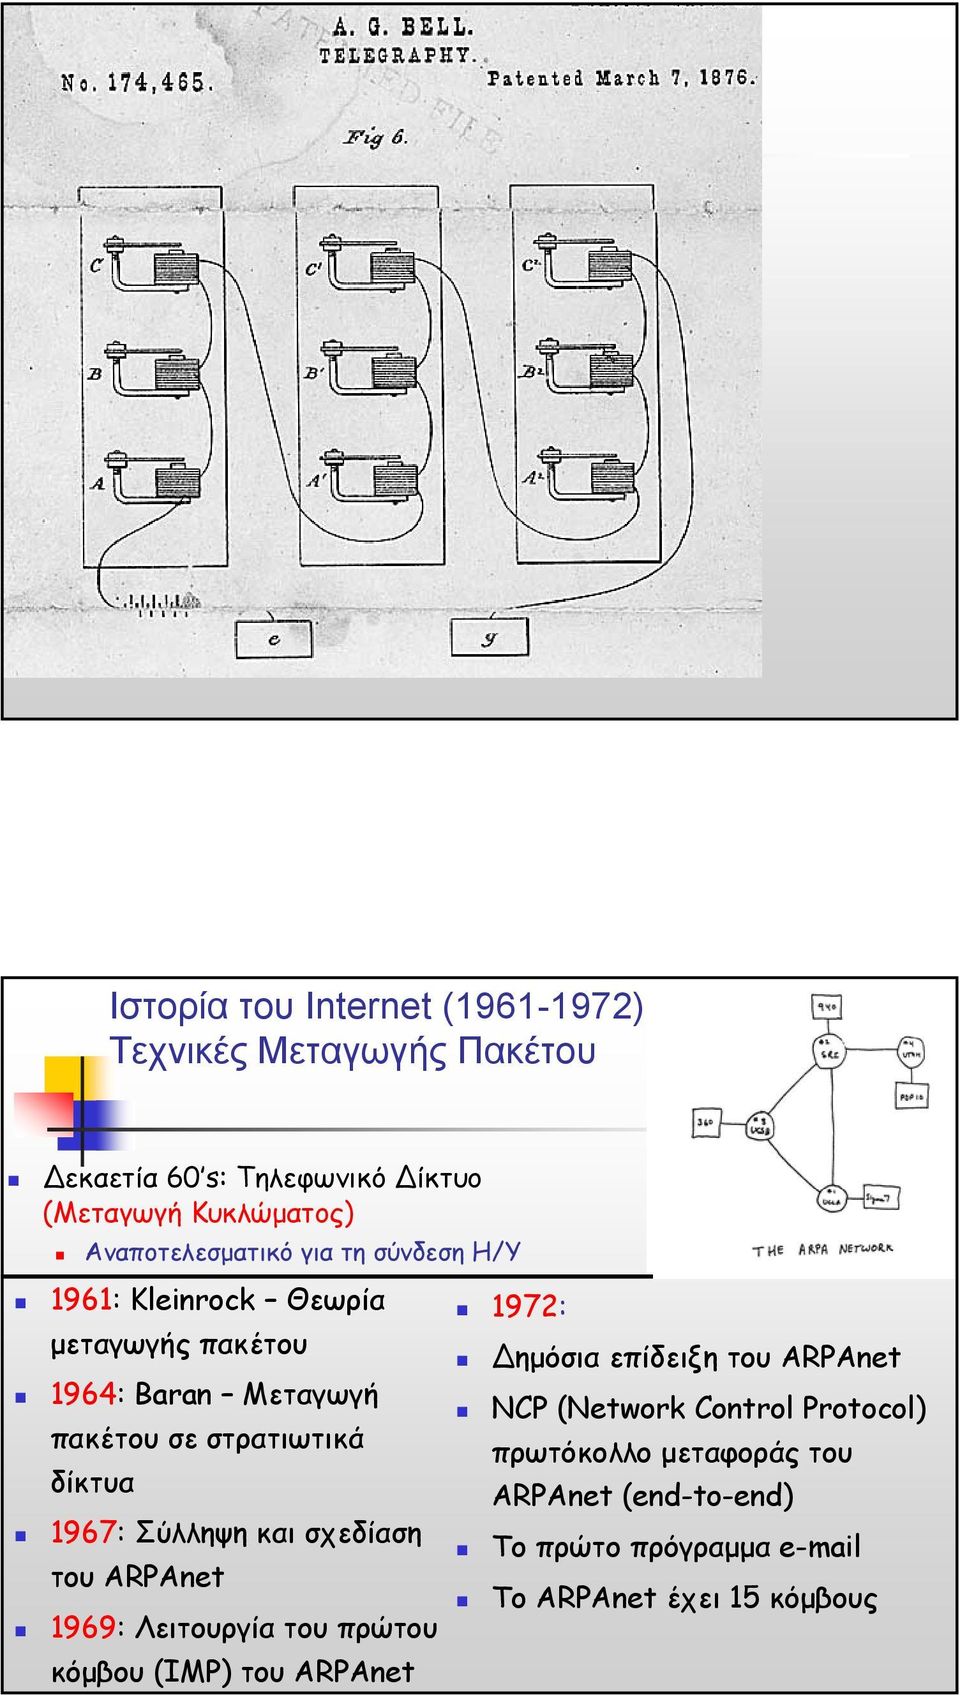 δίκτυα 1967: Σύλληψη και σχεδίαση του ARPAnet 1969: Λειτουργία του πρώτου κόµβου (IMP) του ARPAnet 1972: ηµόσια επίδειξη